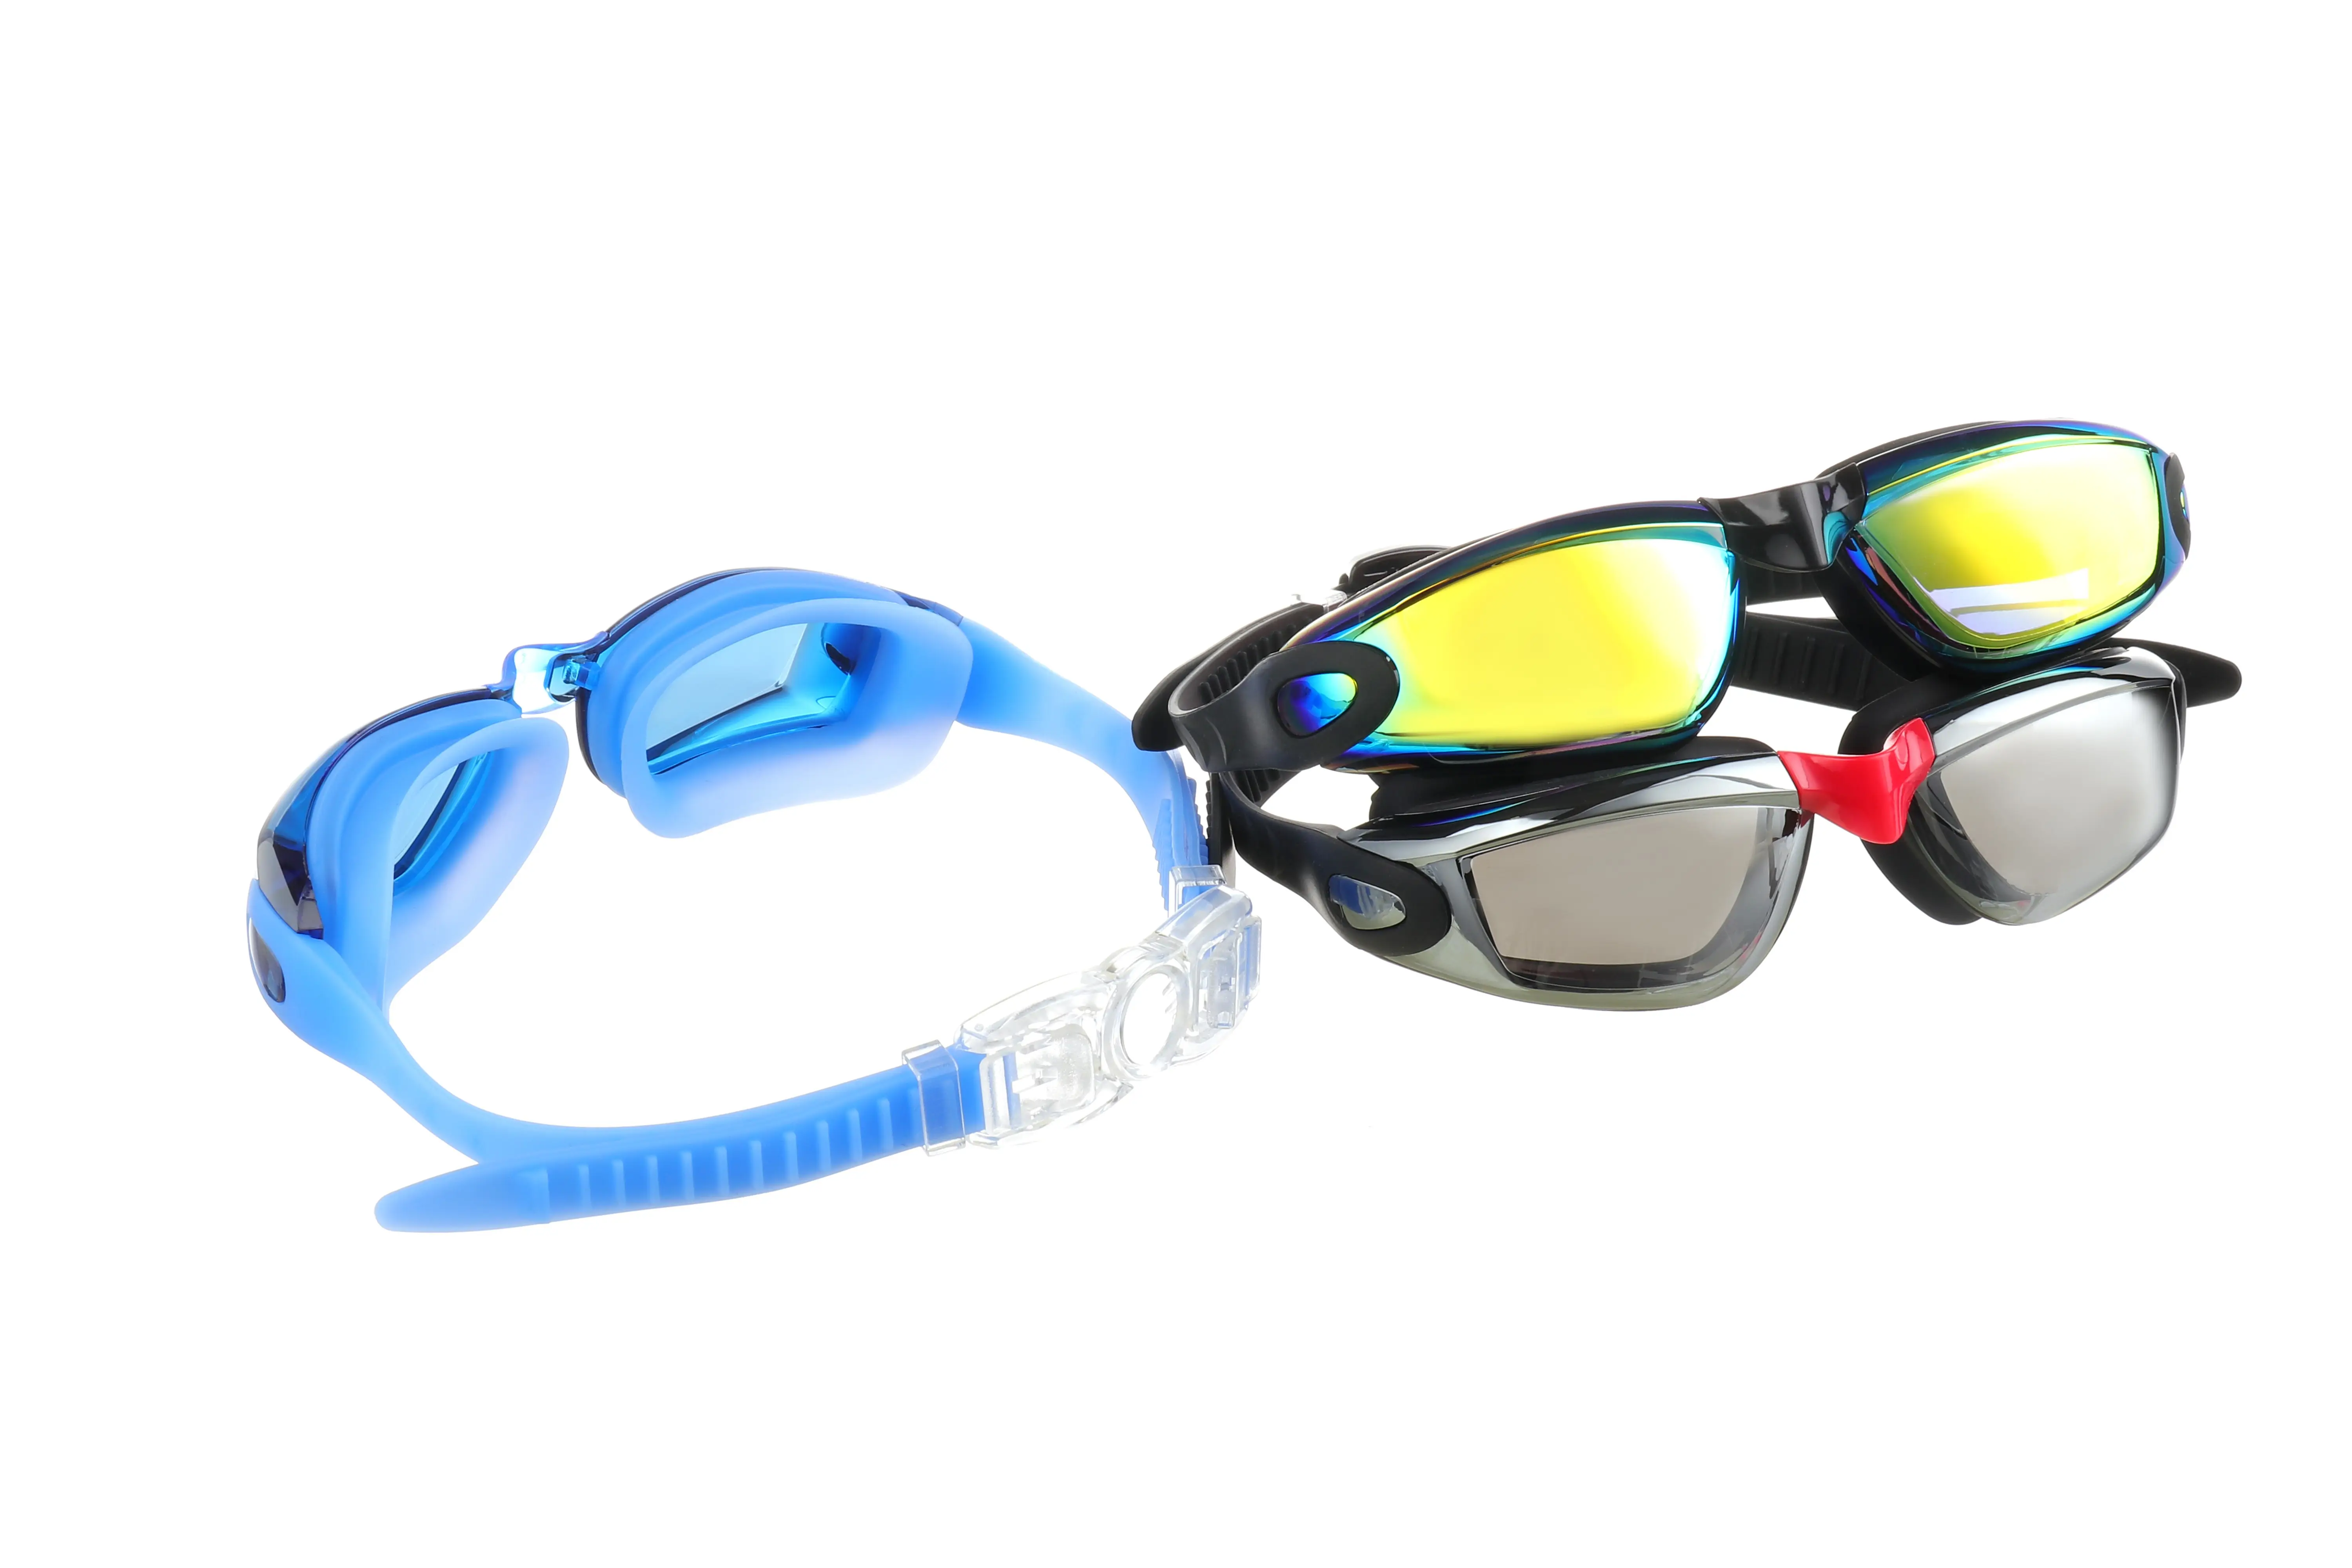 Vendita calda occhiali di protezione in silicone a prova di acqua di mare Pro occhiali di protezione acqua aperta confortevoli occhiali da nuoto occhiali da nebbia per adulti